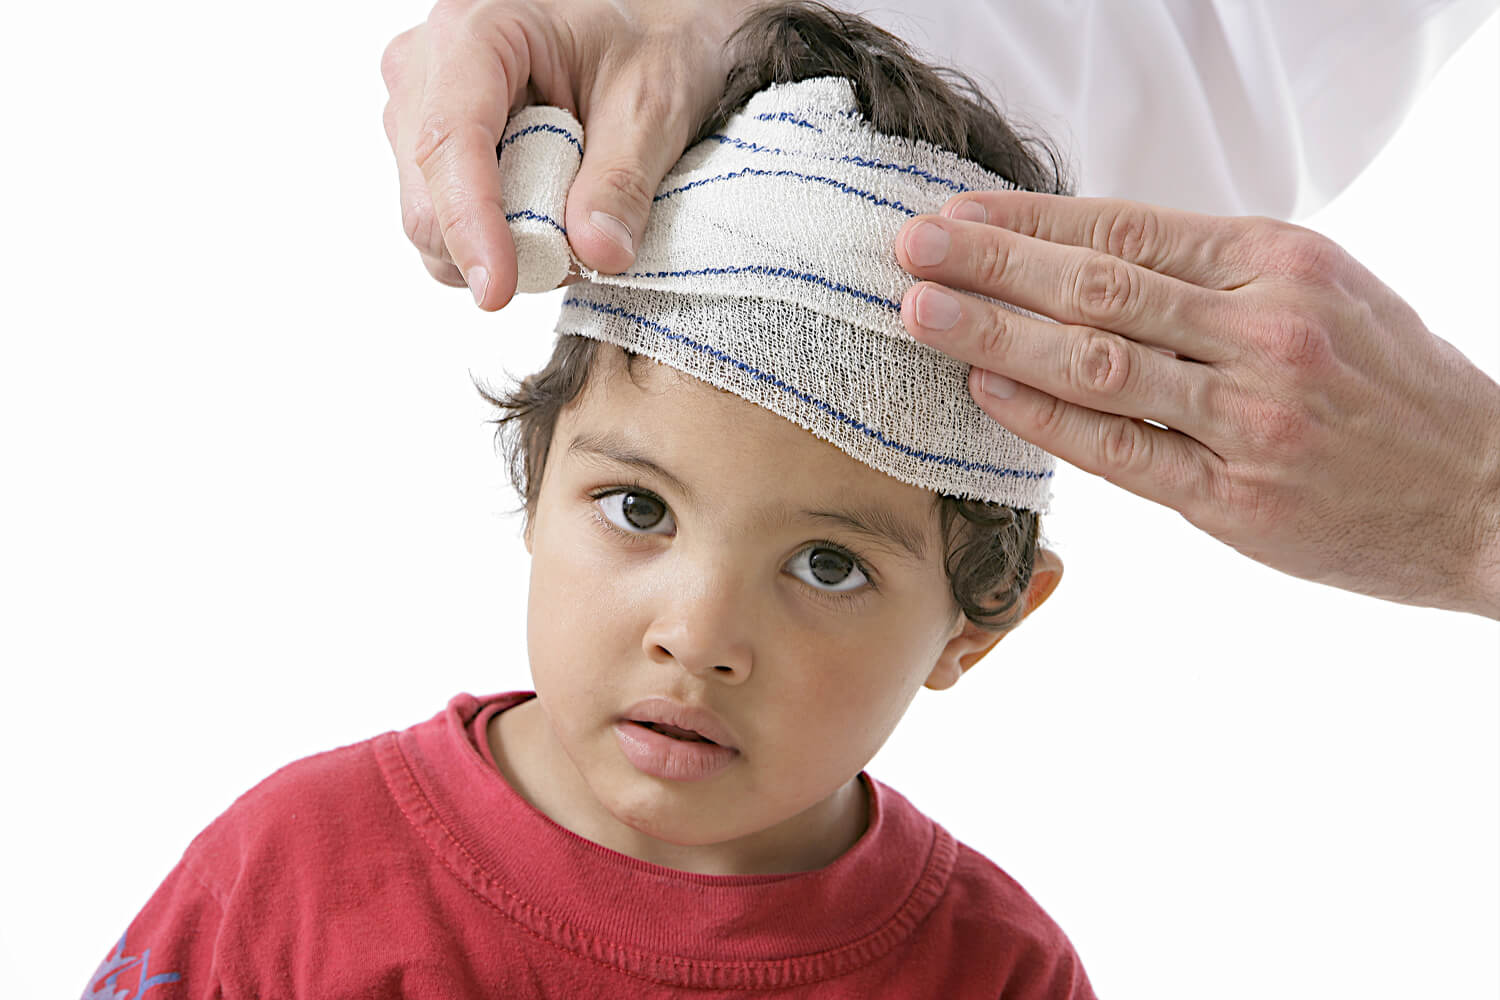 Head Injuries In Children